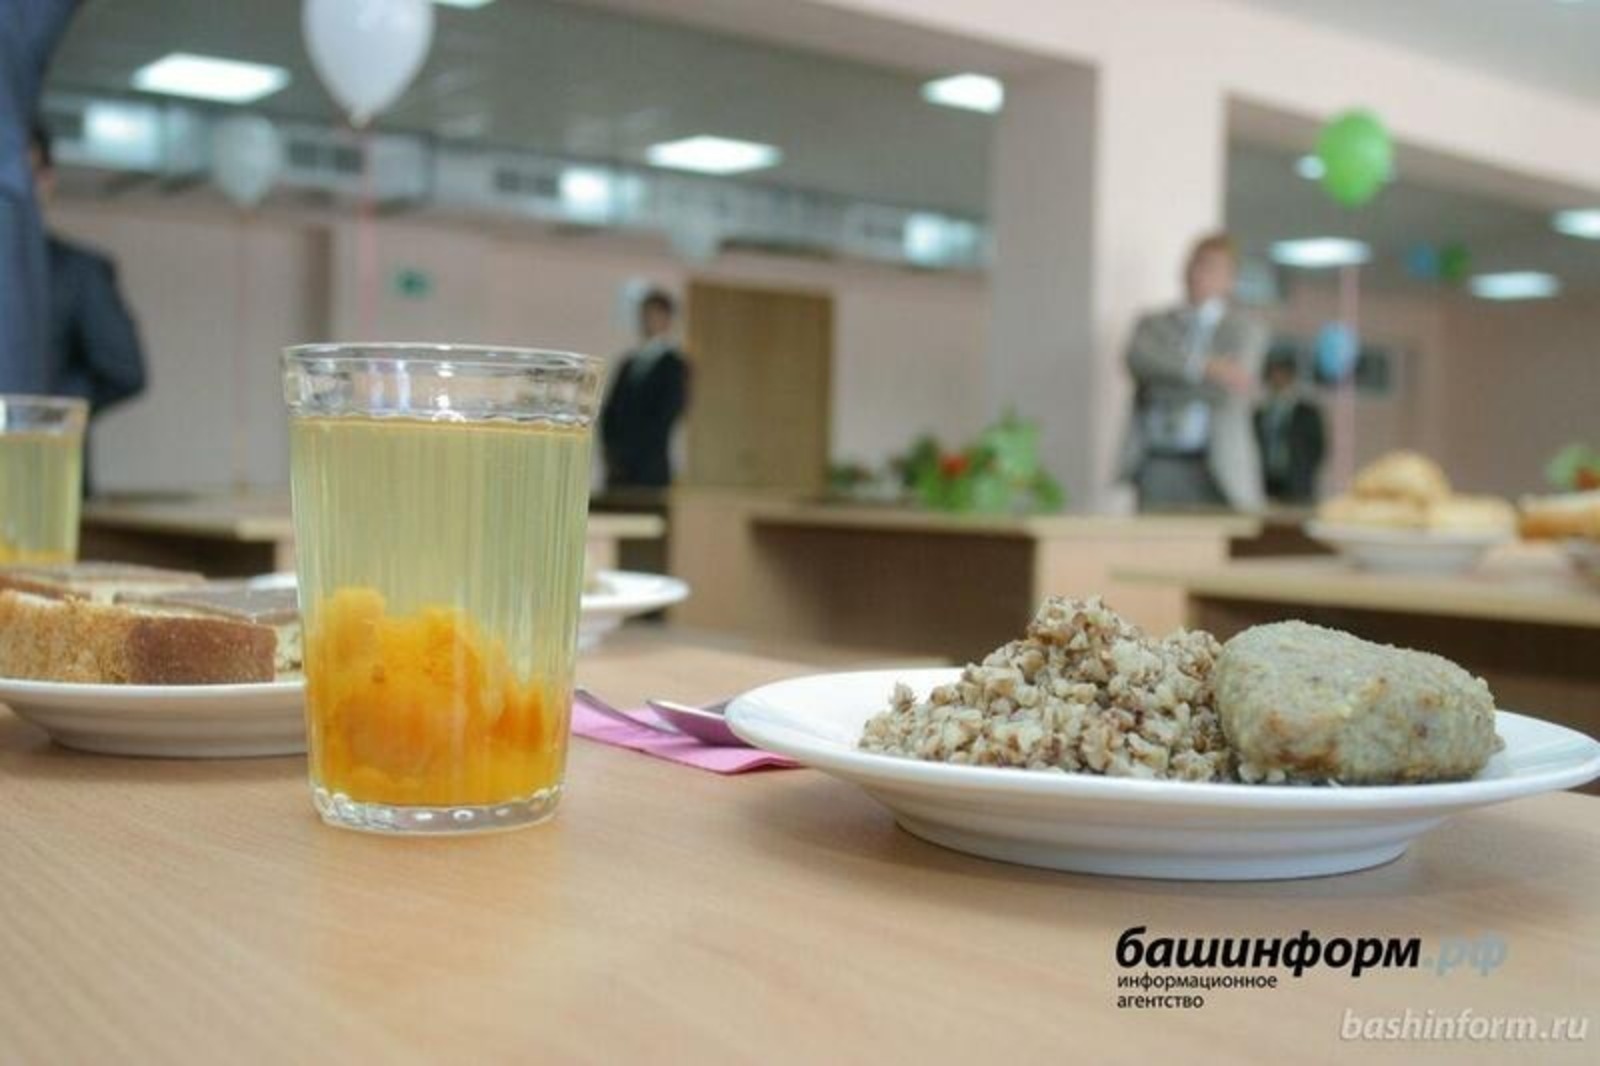 Как кормят в школах Башкирии